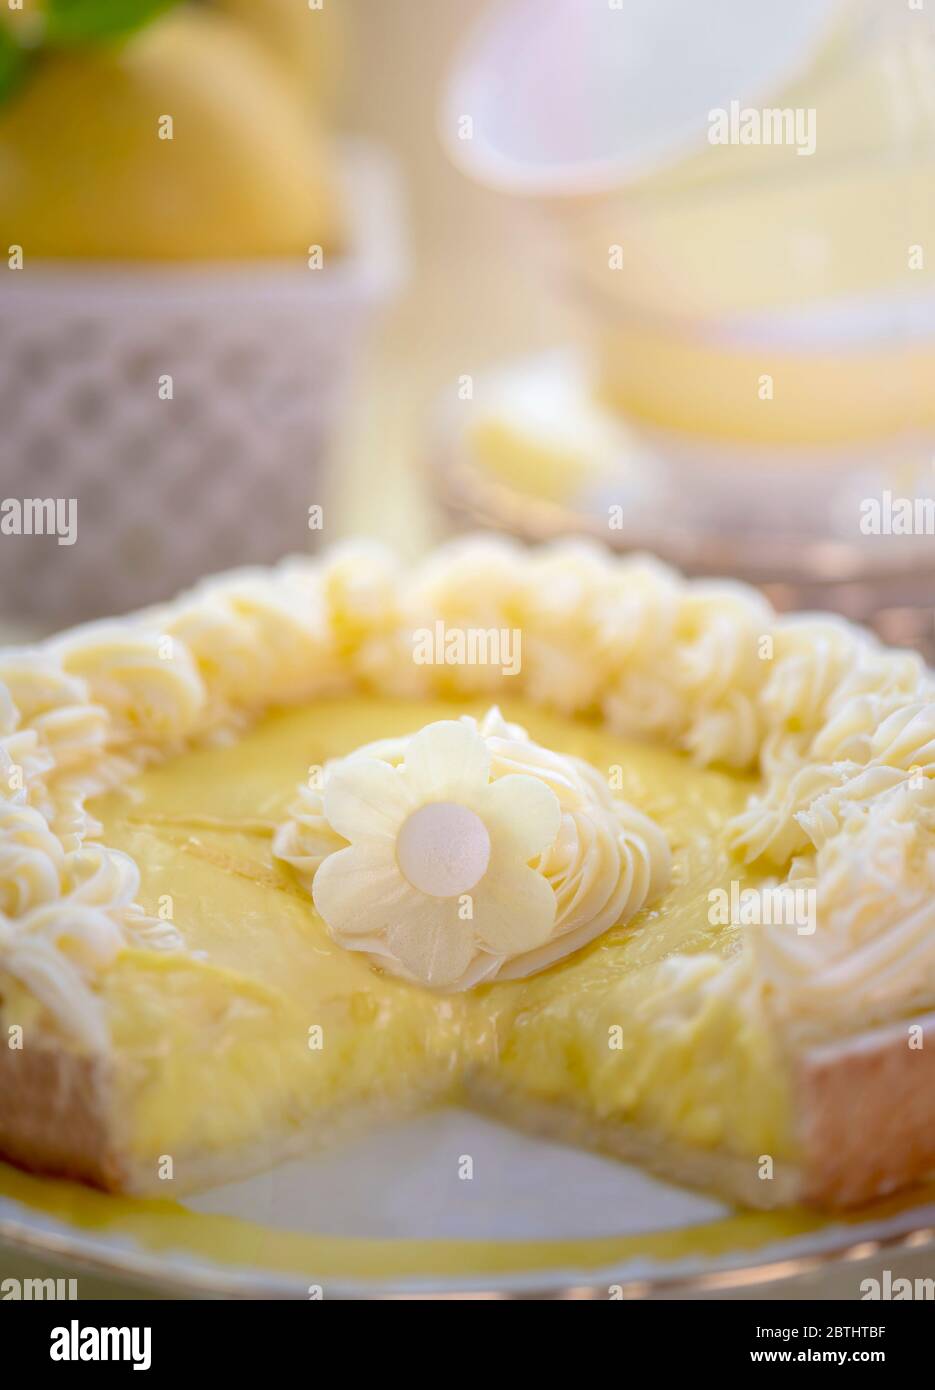 Nahaufnahme von köstlichen Zitronenherz mit saftigen Mousse Textur und Butter Sahne auf der Oberseite mit dekorativen Blume in der Mitte in der Nähe von Tee-Set. Shot für Kopie Spa Stockfoto